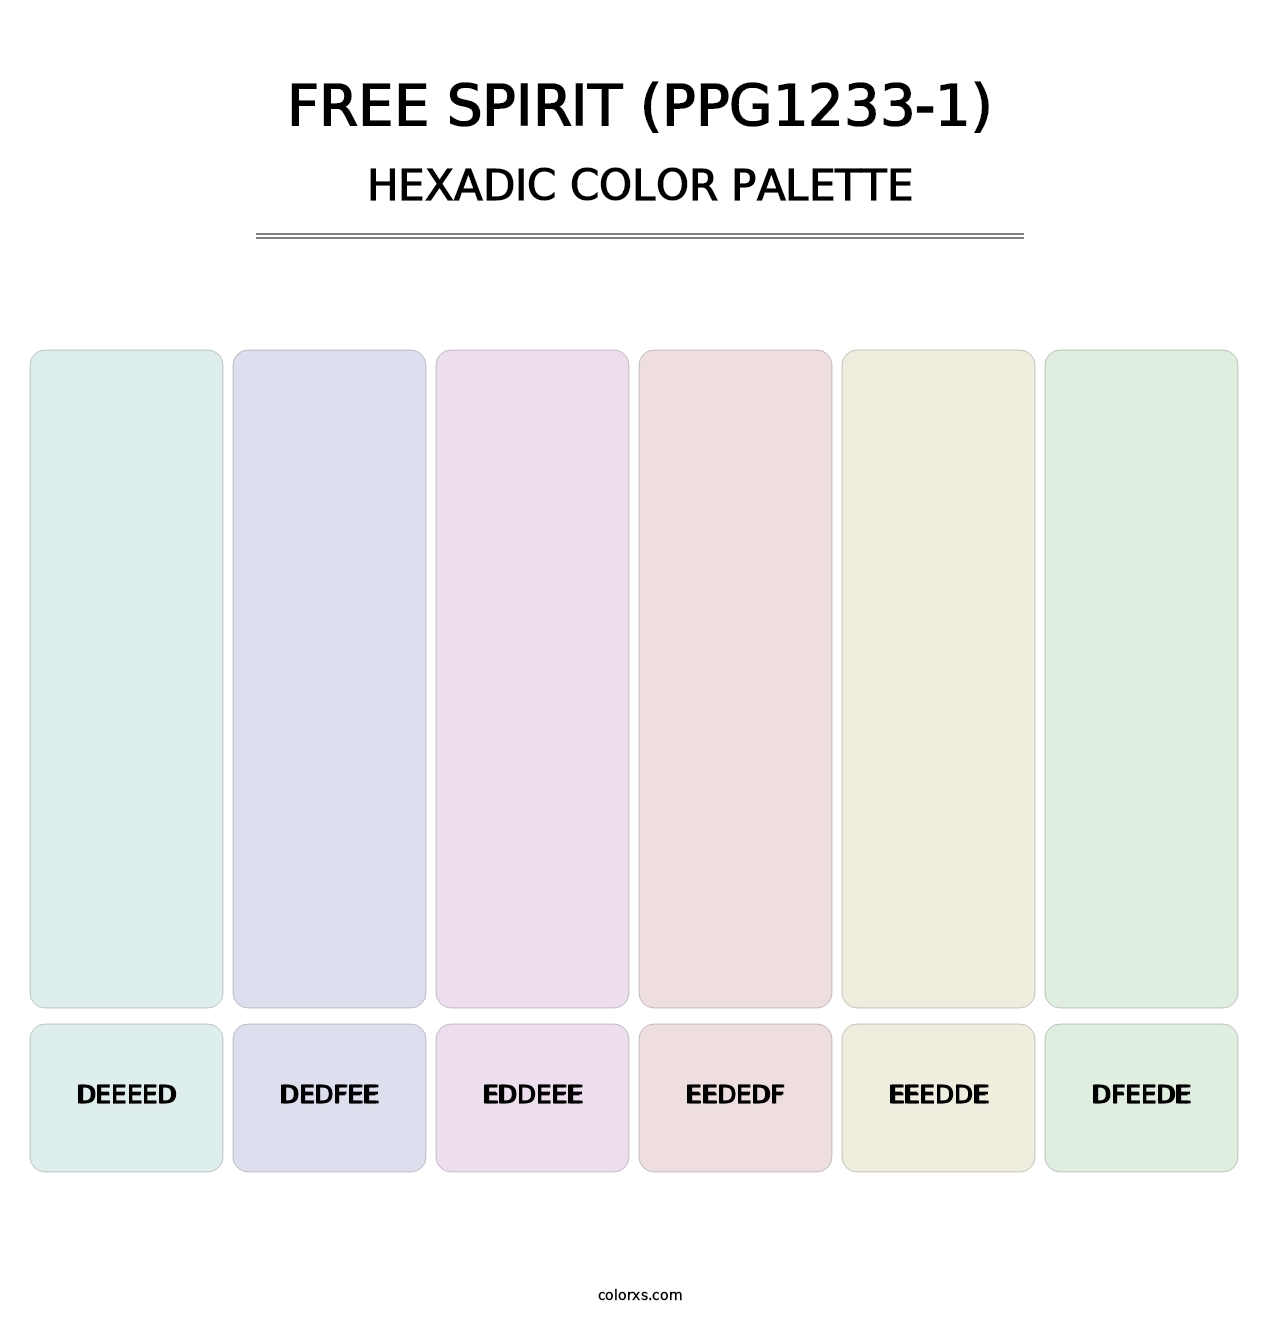 Free Spirit (PPG1233-1) - Hexadic Color Palette